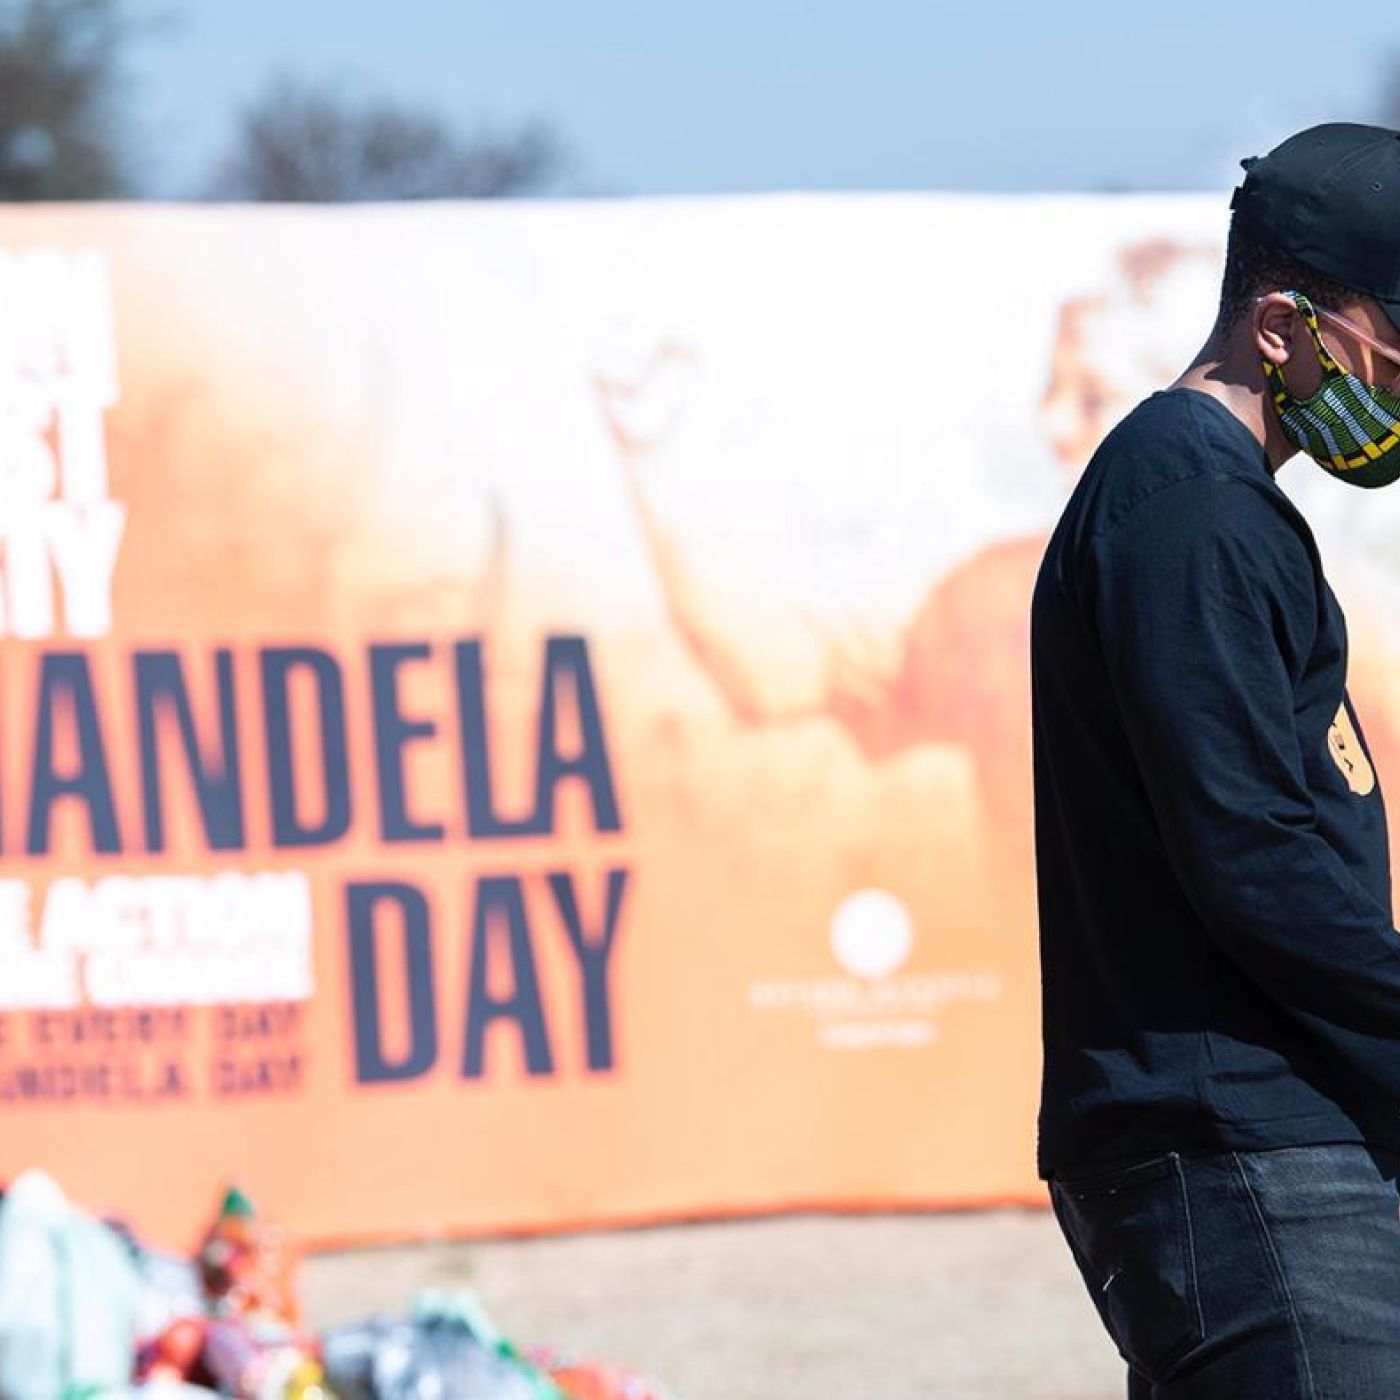 Mandela Day 2020 